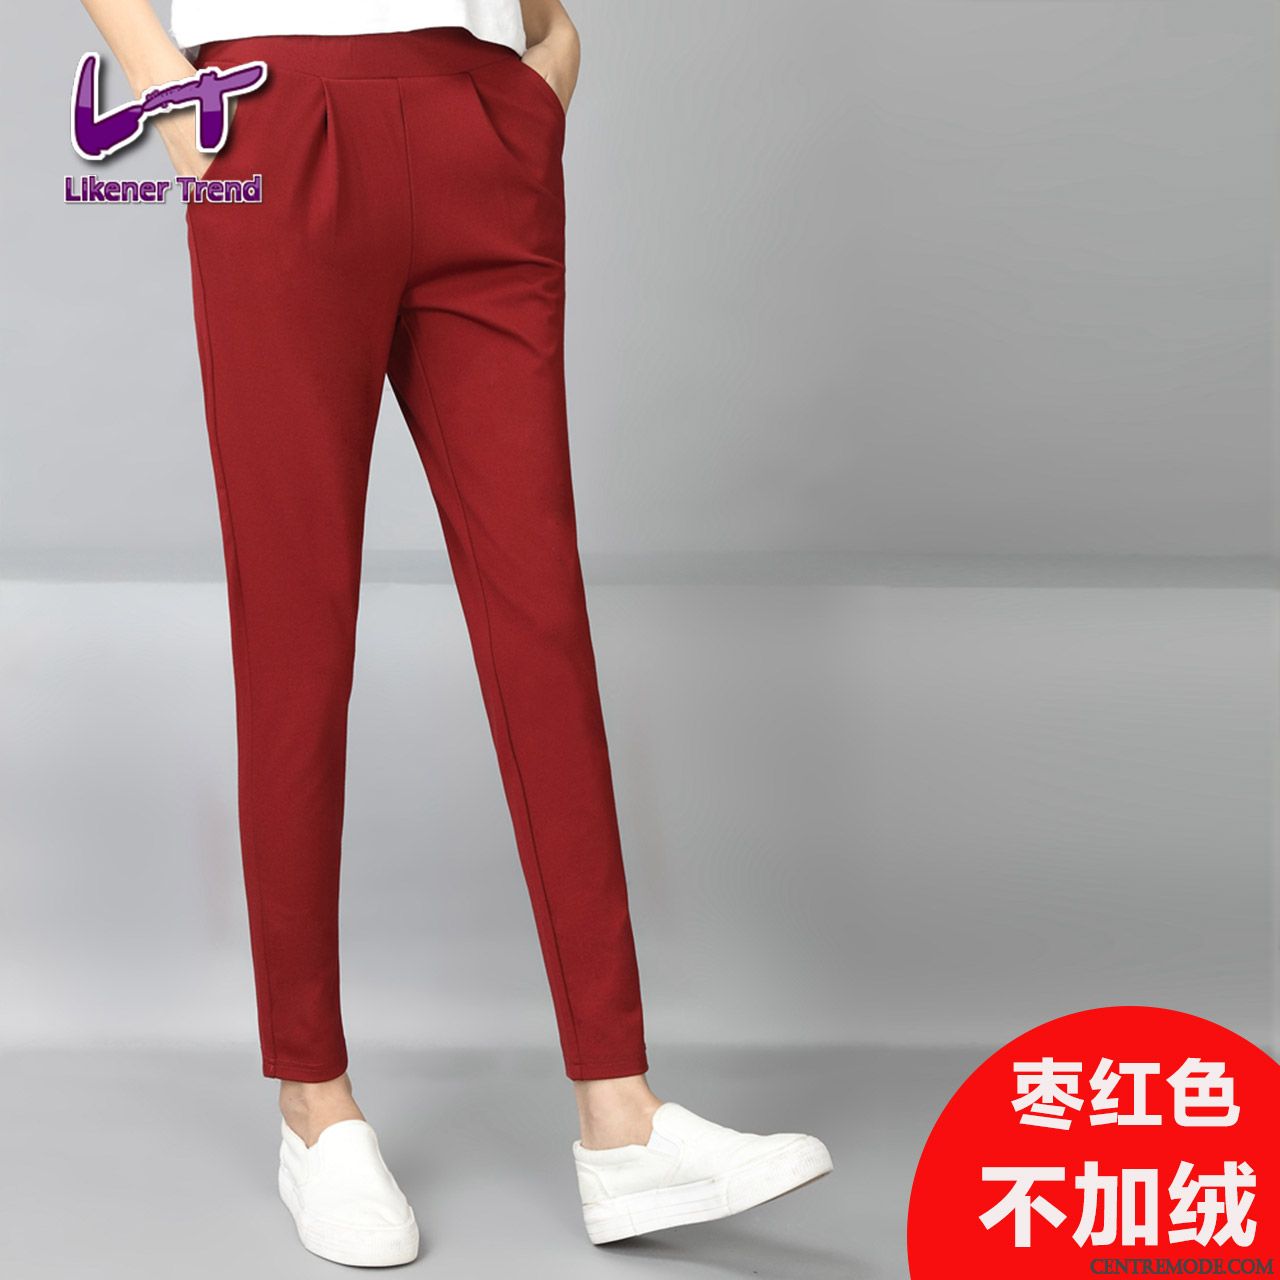 Pantalons Rouges Femme Blanc Violet, Pantalon Noir Femme Habillé En Ligne